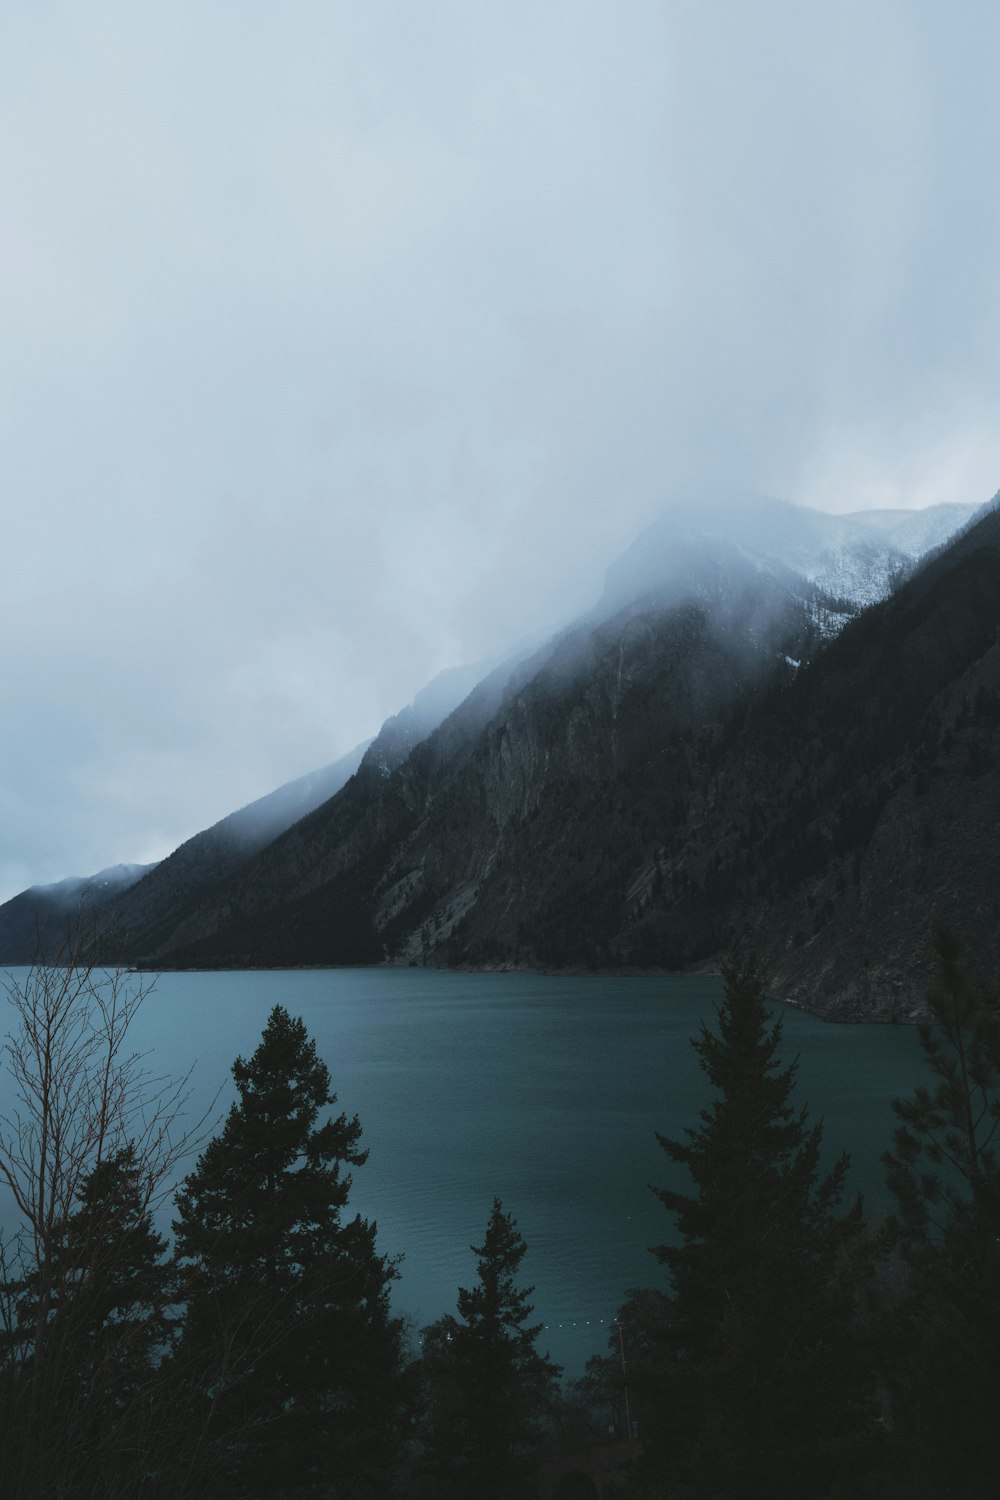 Ein See, umgeben von Bergen und Bäumen unter einem wolkenverhangenen Himmel